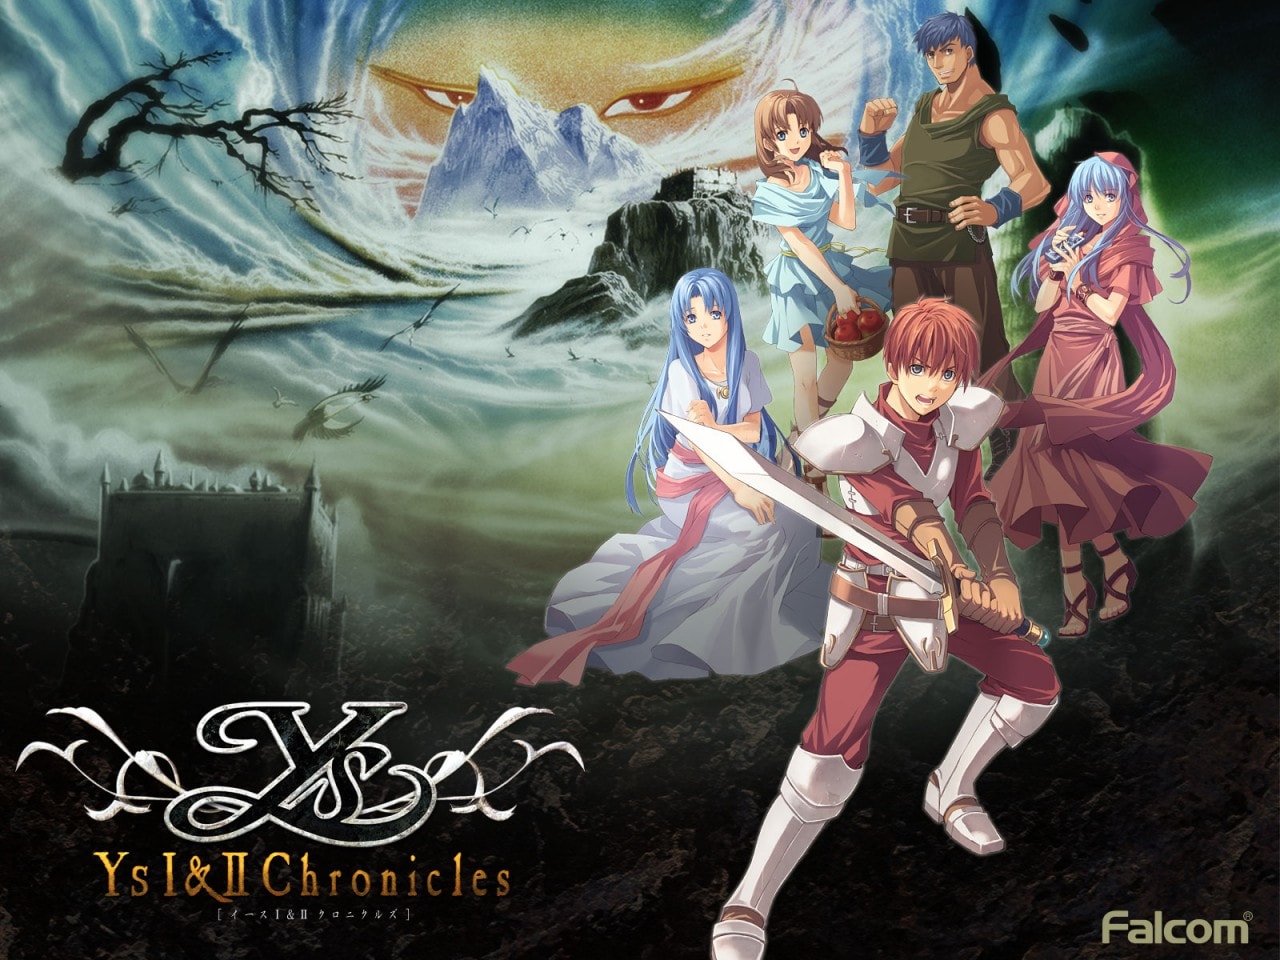 Il remake di Ys Chronicles 1 arriverà presto su Android e iOS (video)